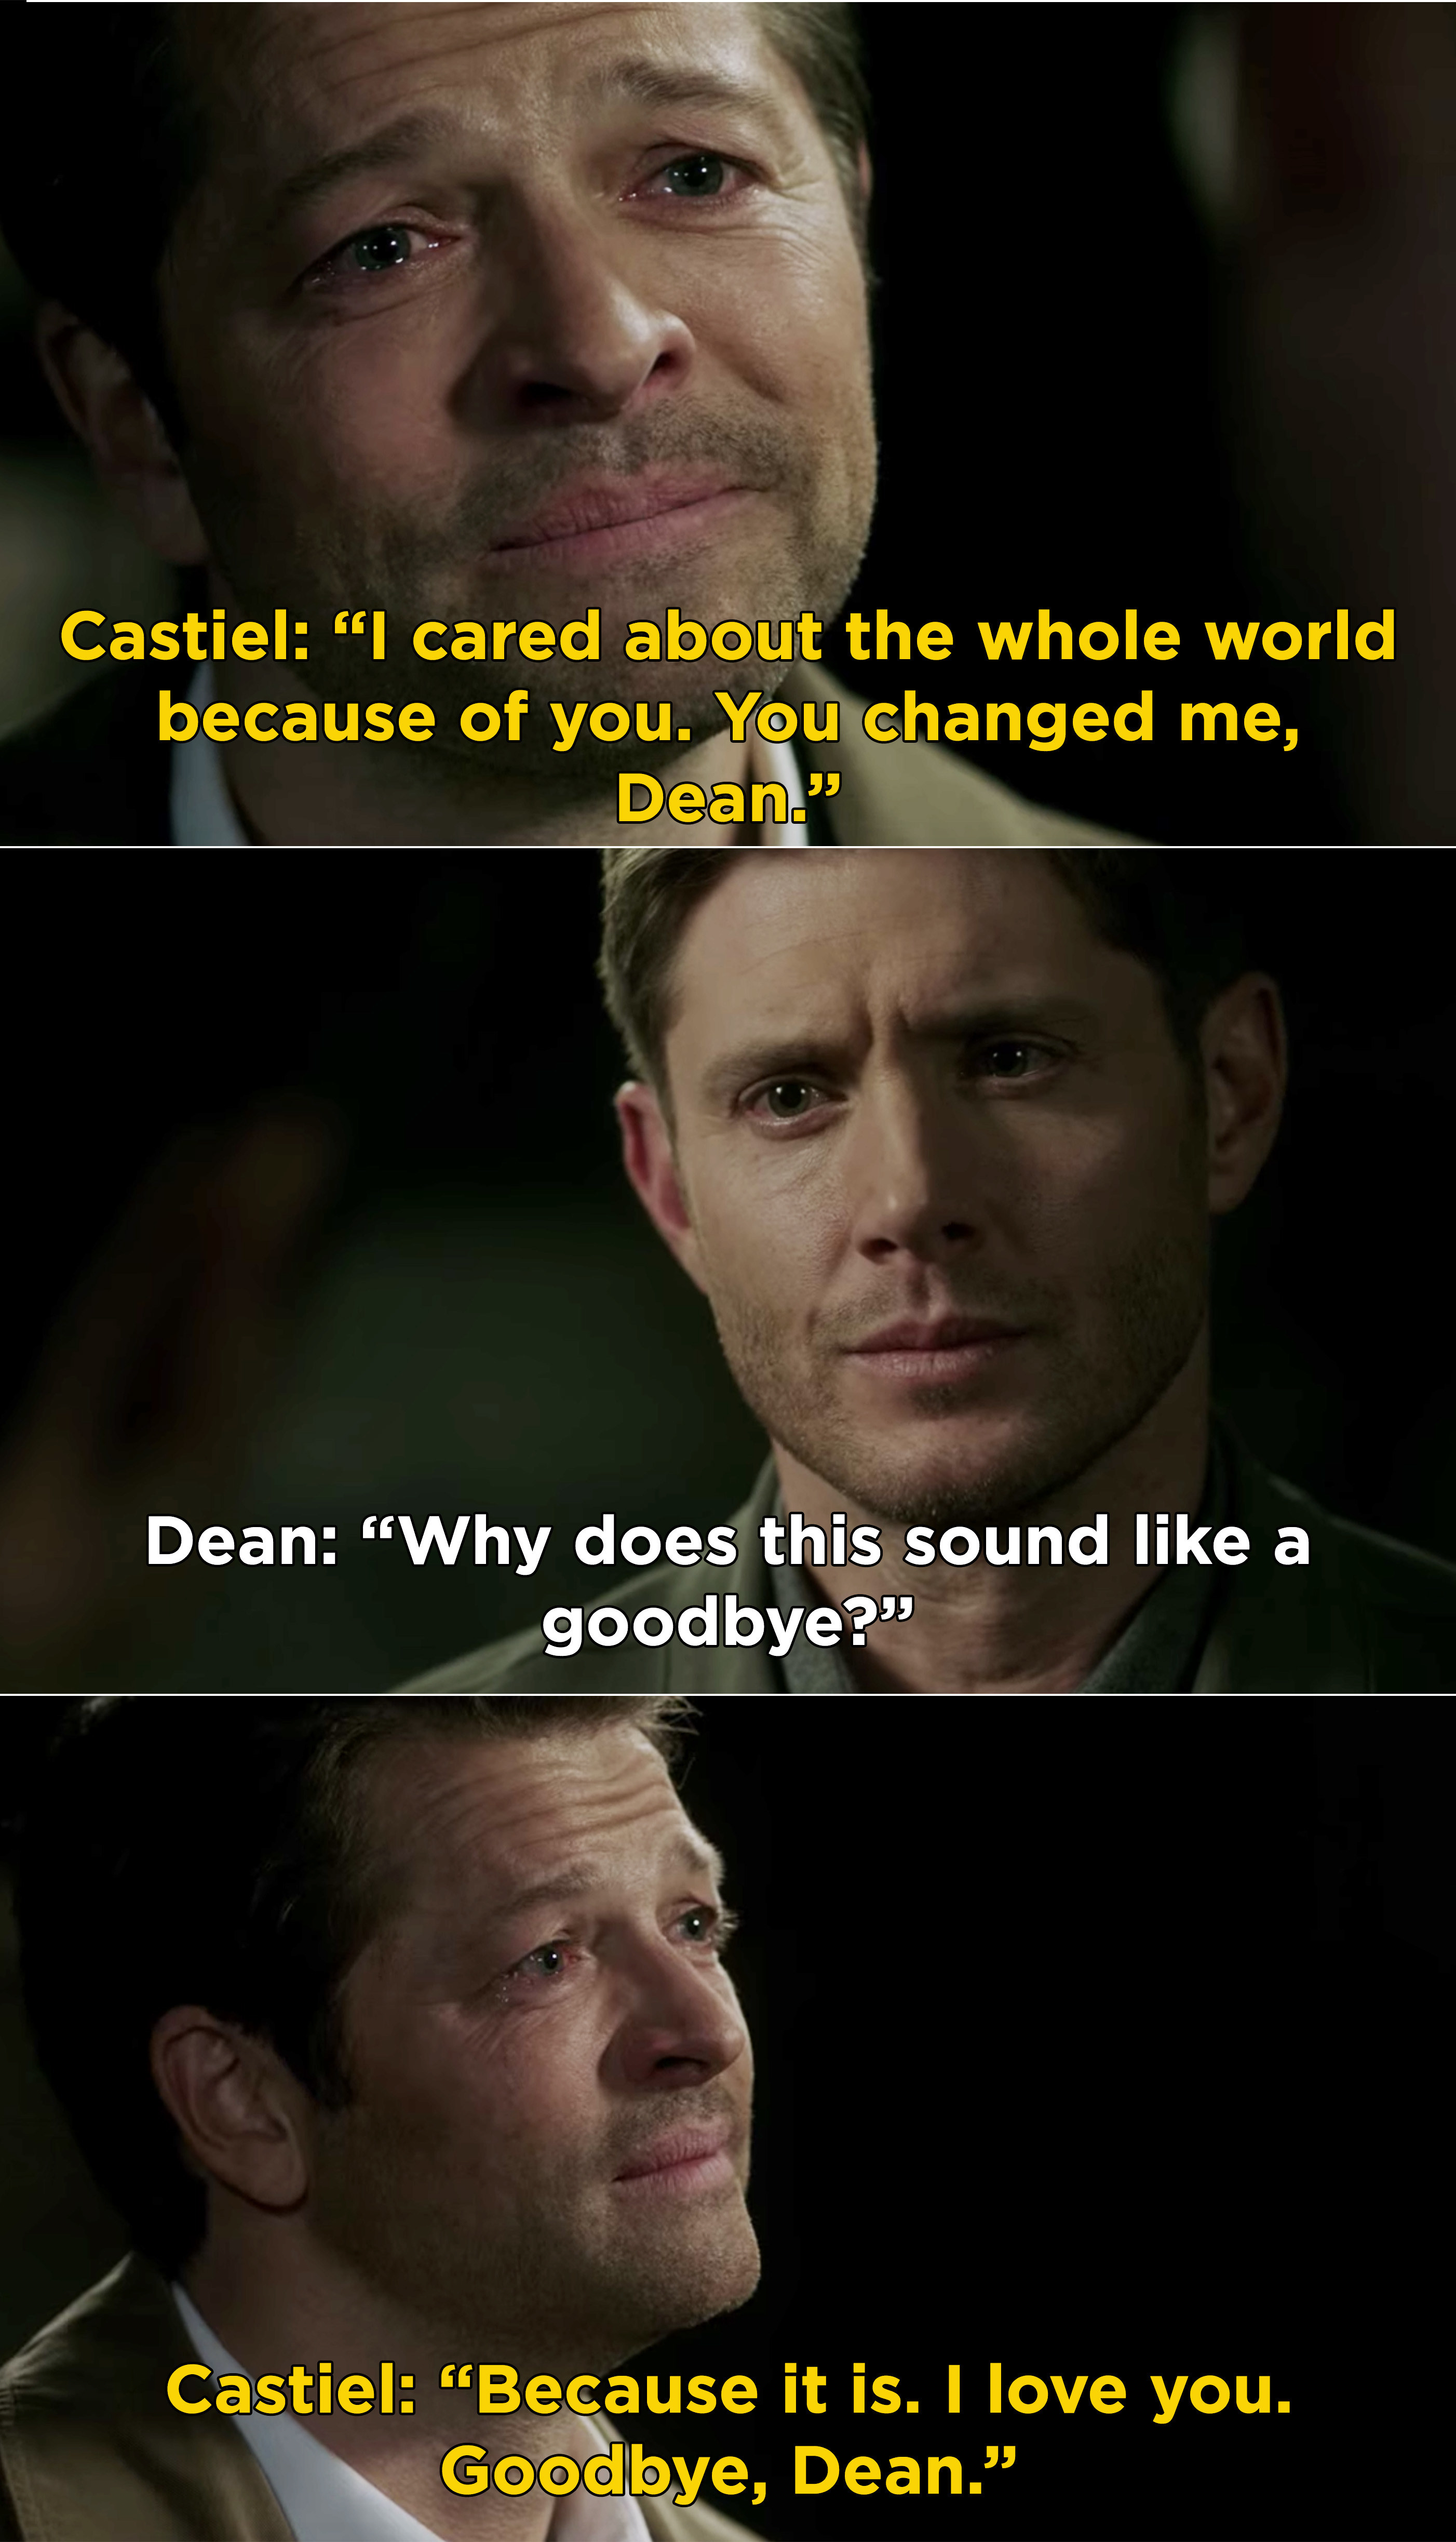 Castiel哭泣,告诉院长,他“关心整个world"因为他,他爱他